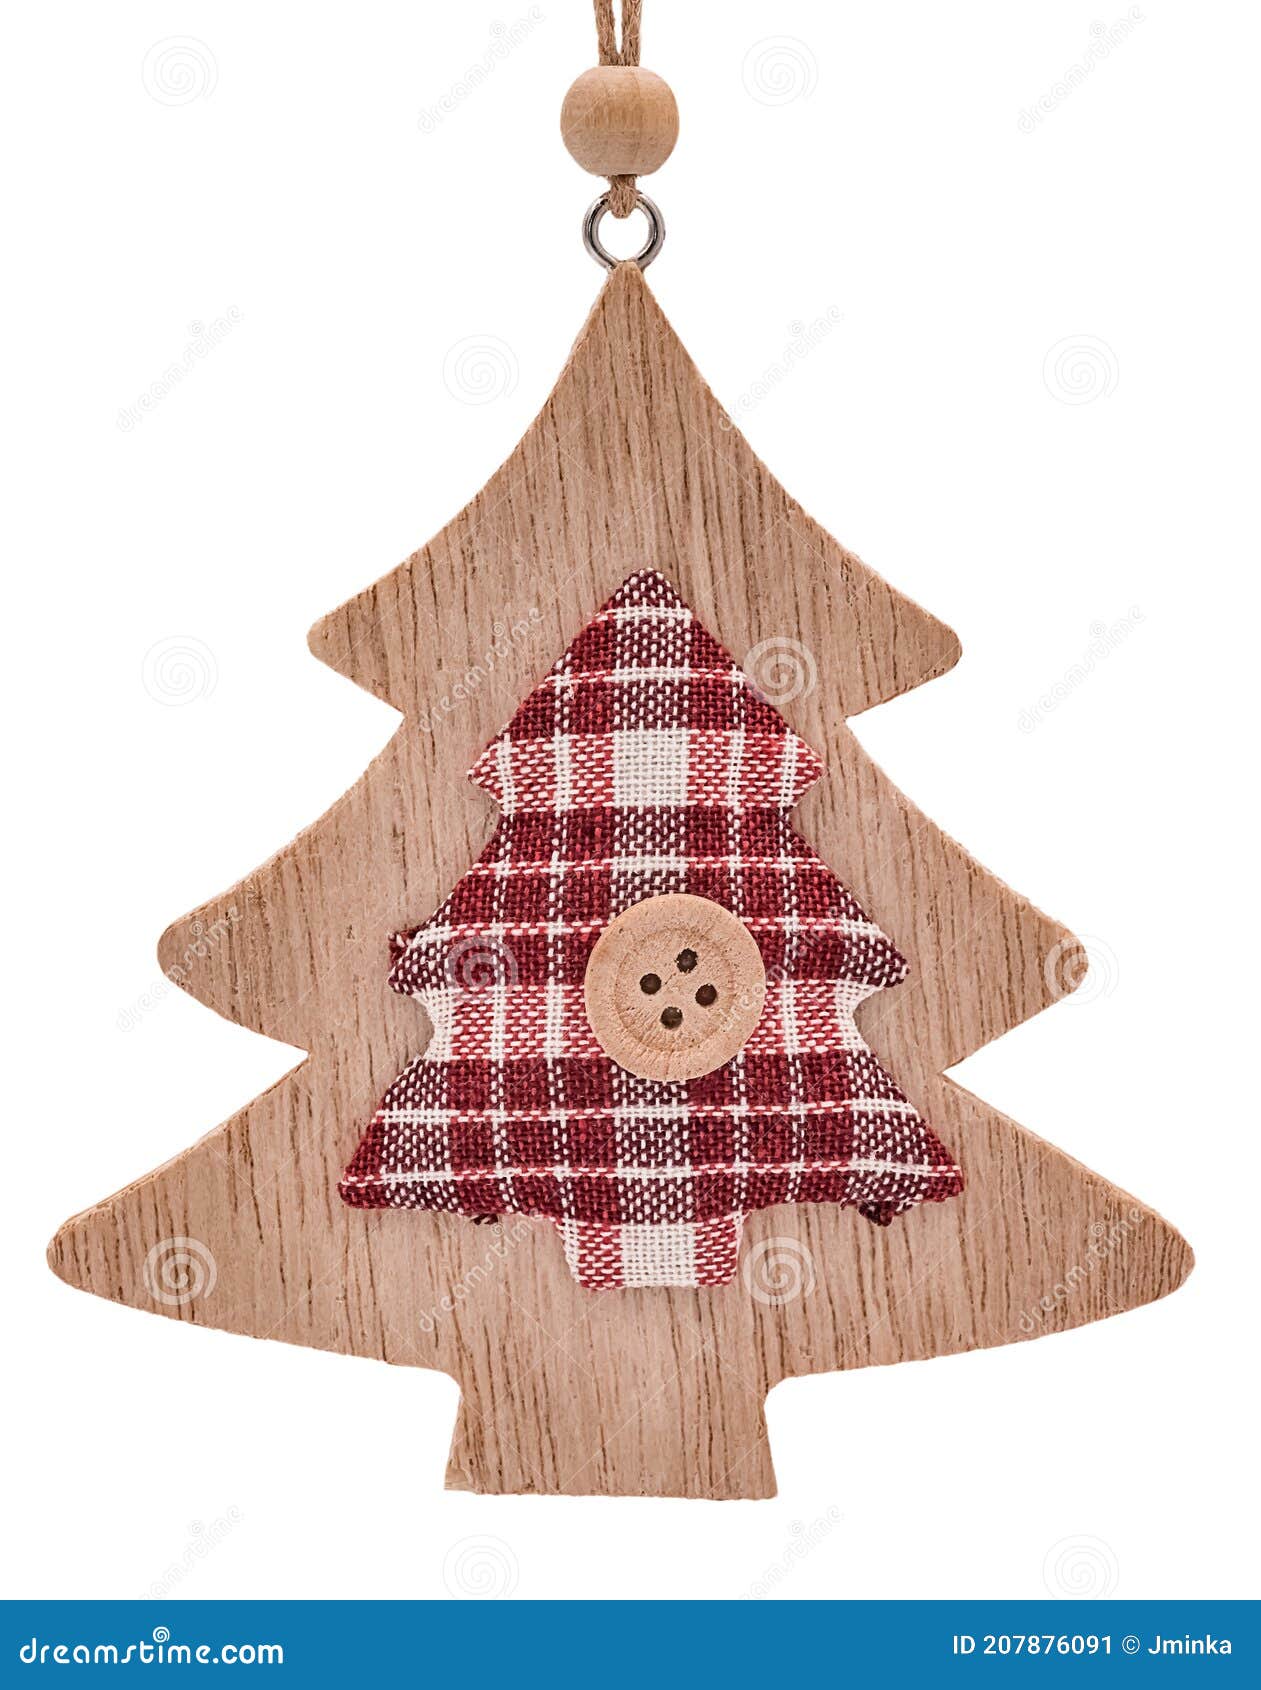 Decoración De árbol De Navidad De Madera Con Textil árbol De Yeso Y Botón  Imagen de archivo - Imagen de estacional, pino: 207876091